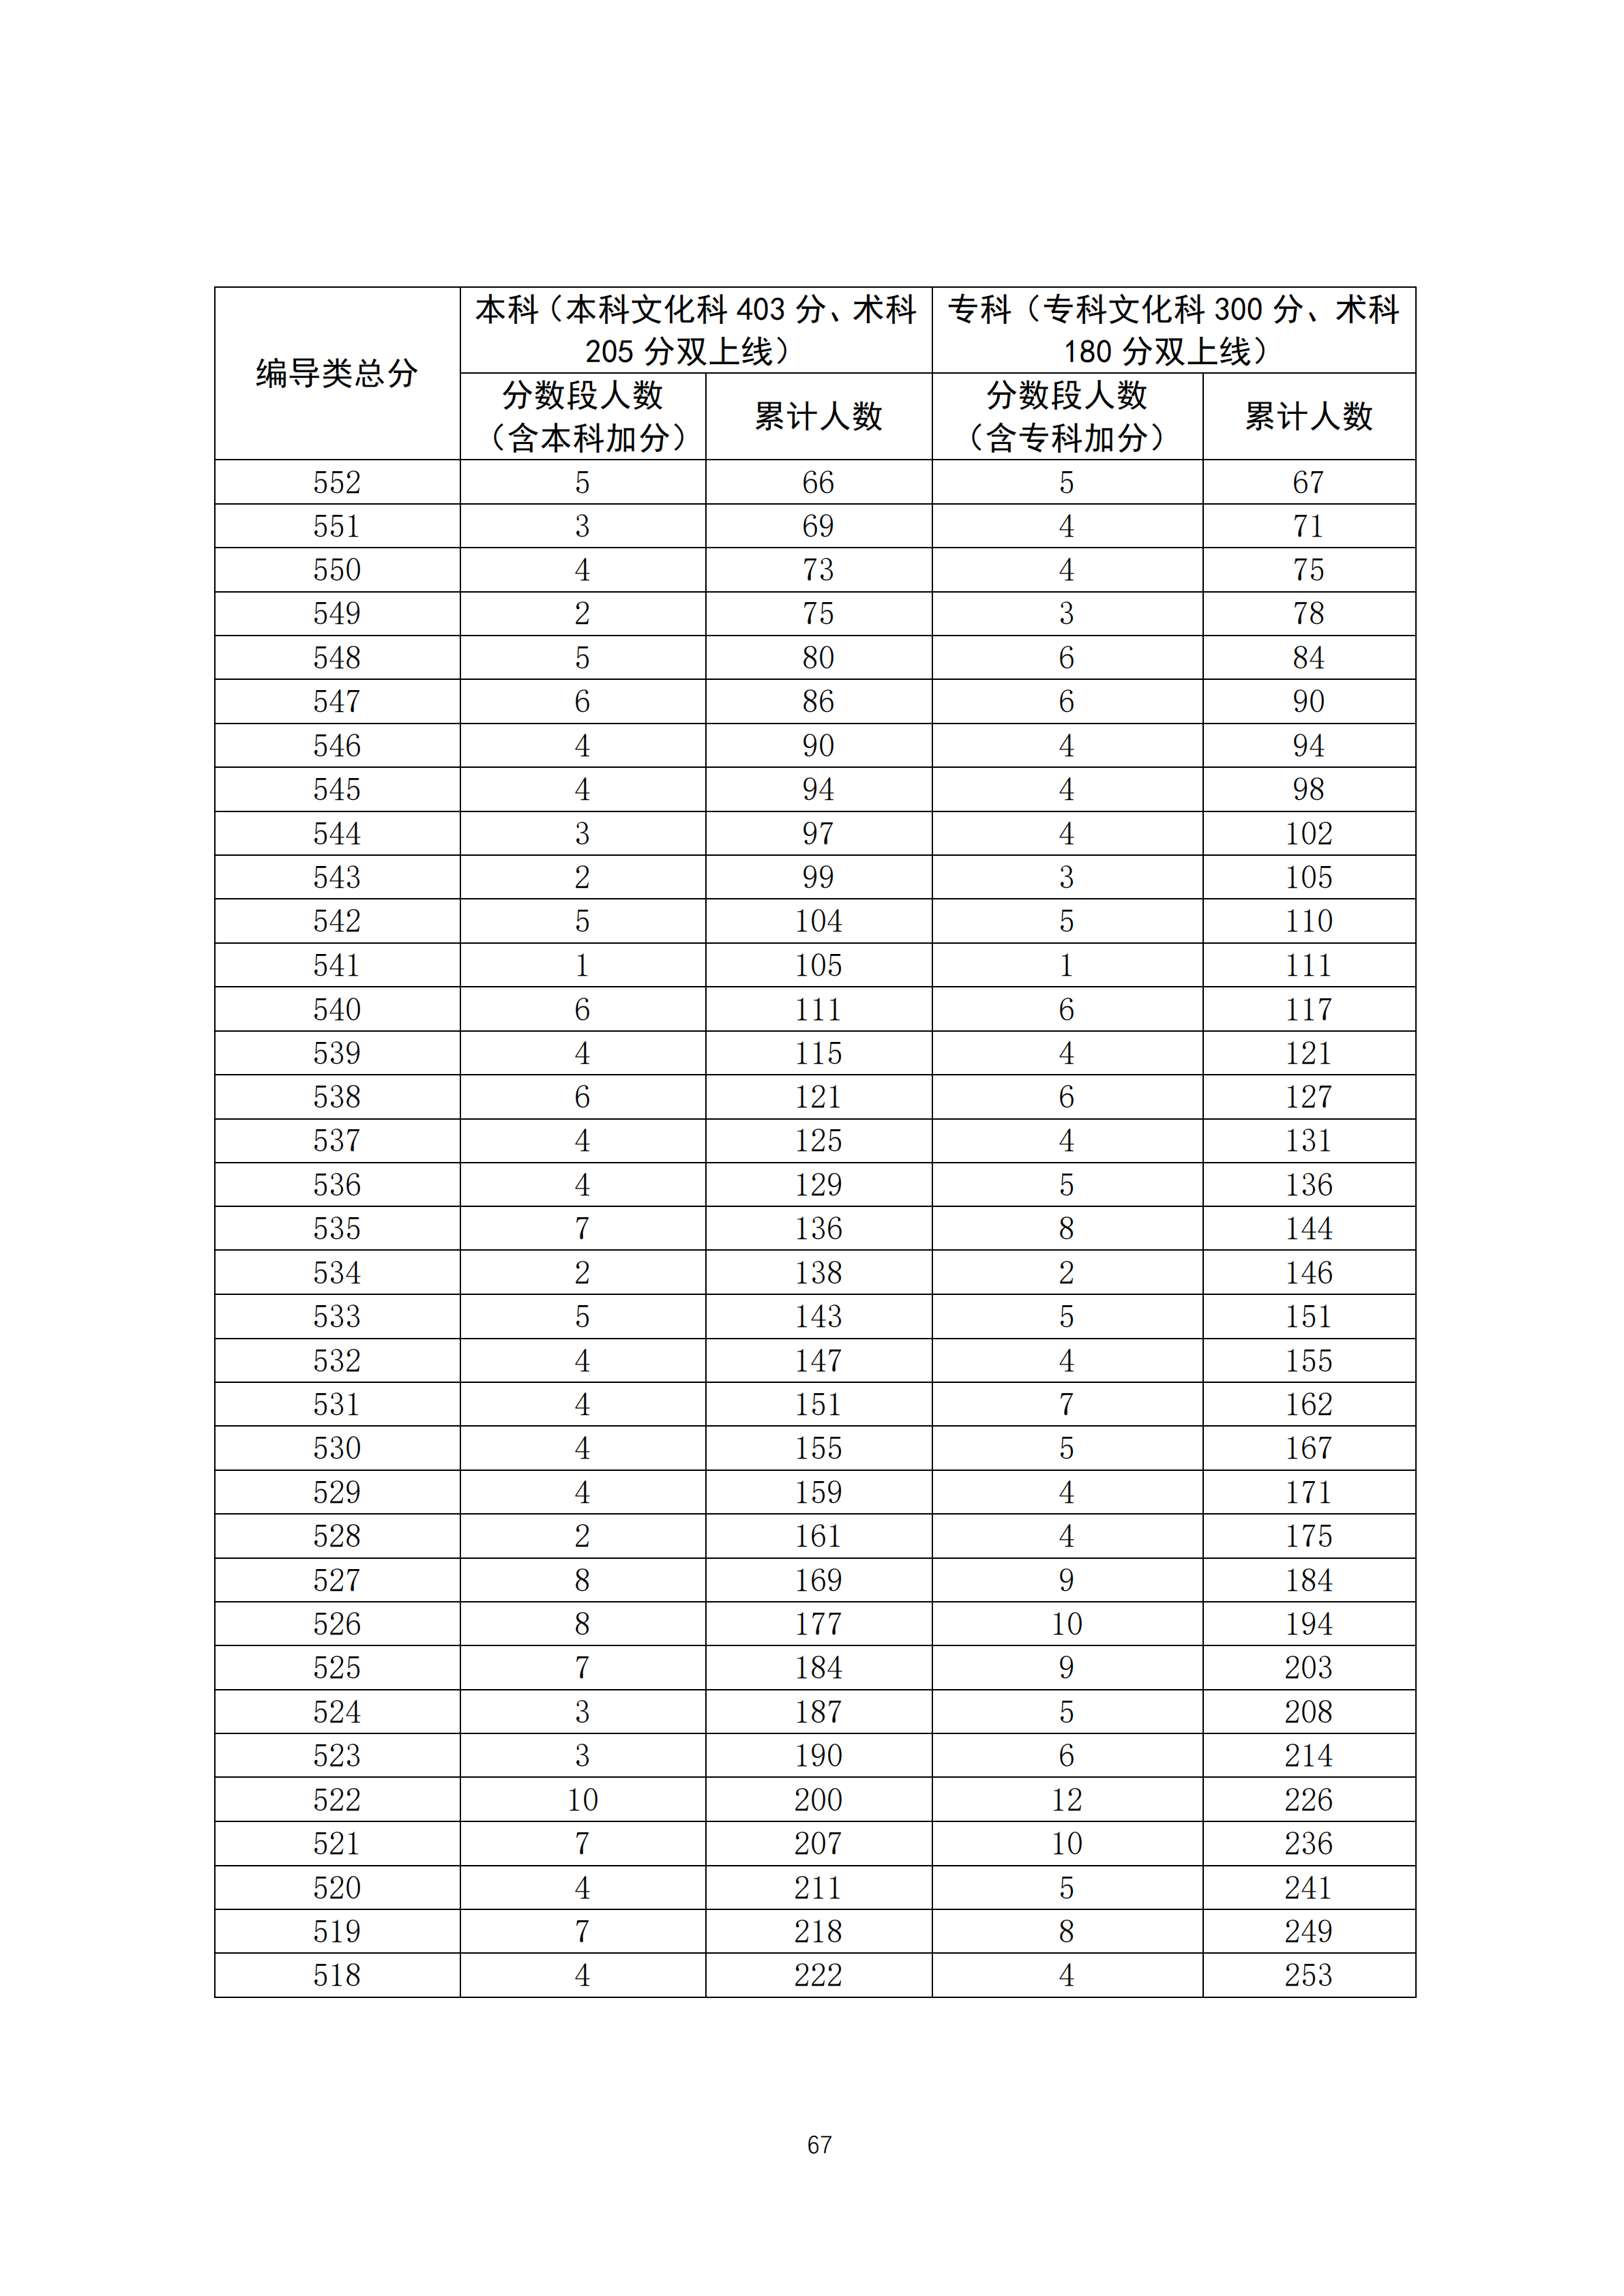 2020广东高考一分一段表 广播电视编导类成绩排名及累计考生人数